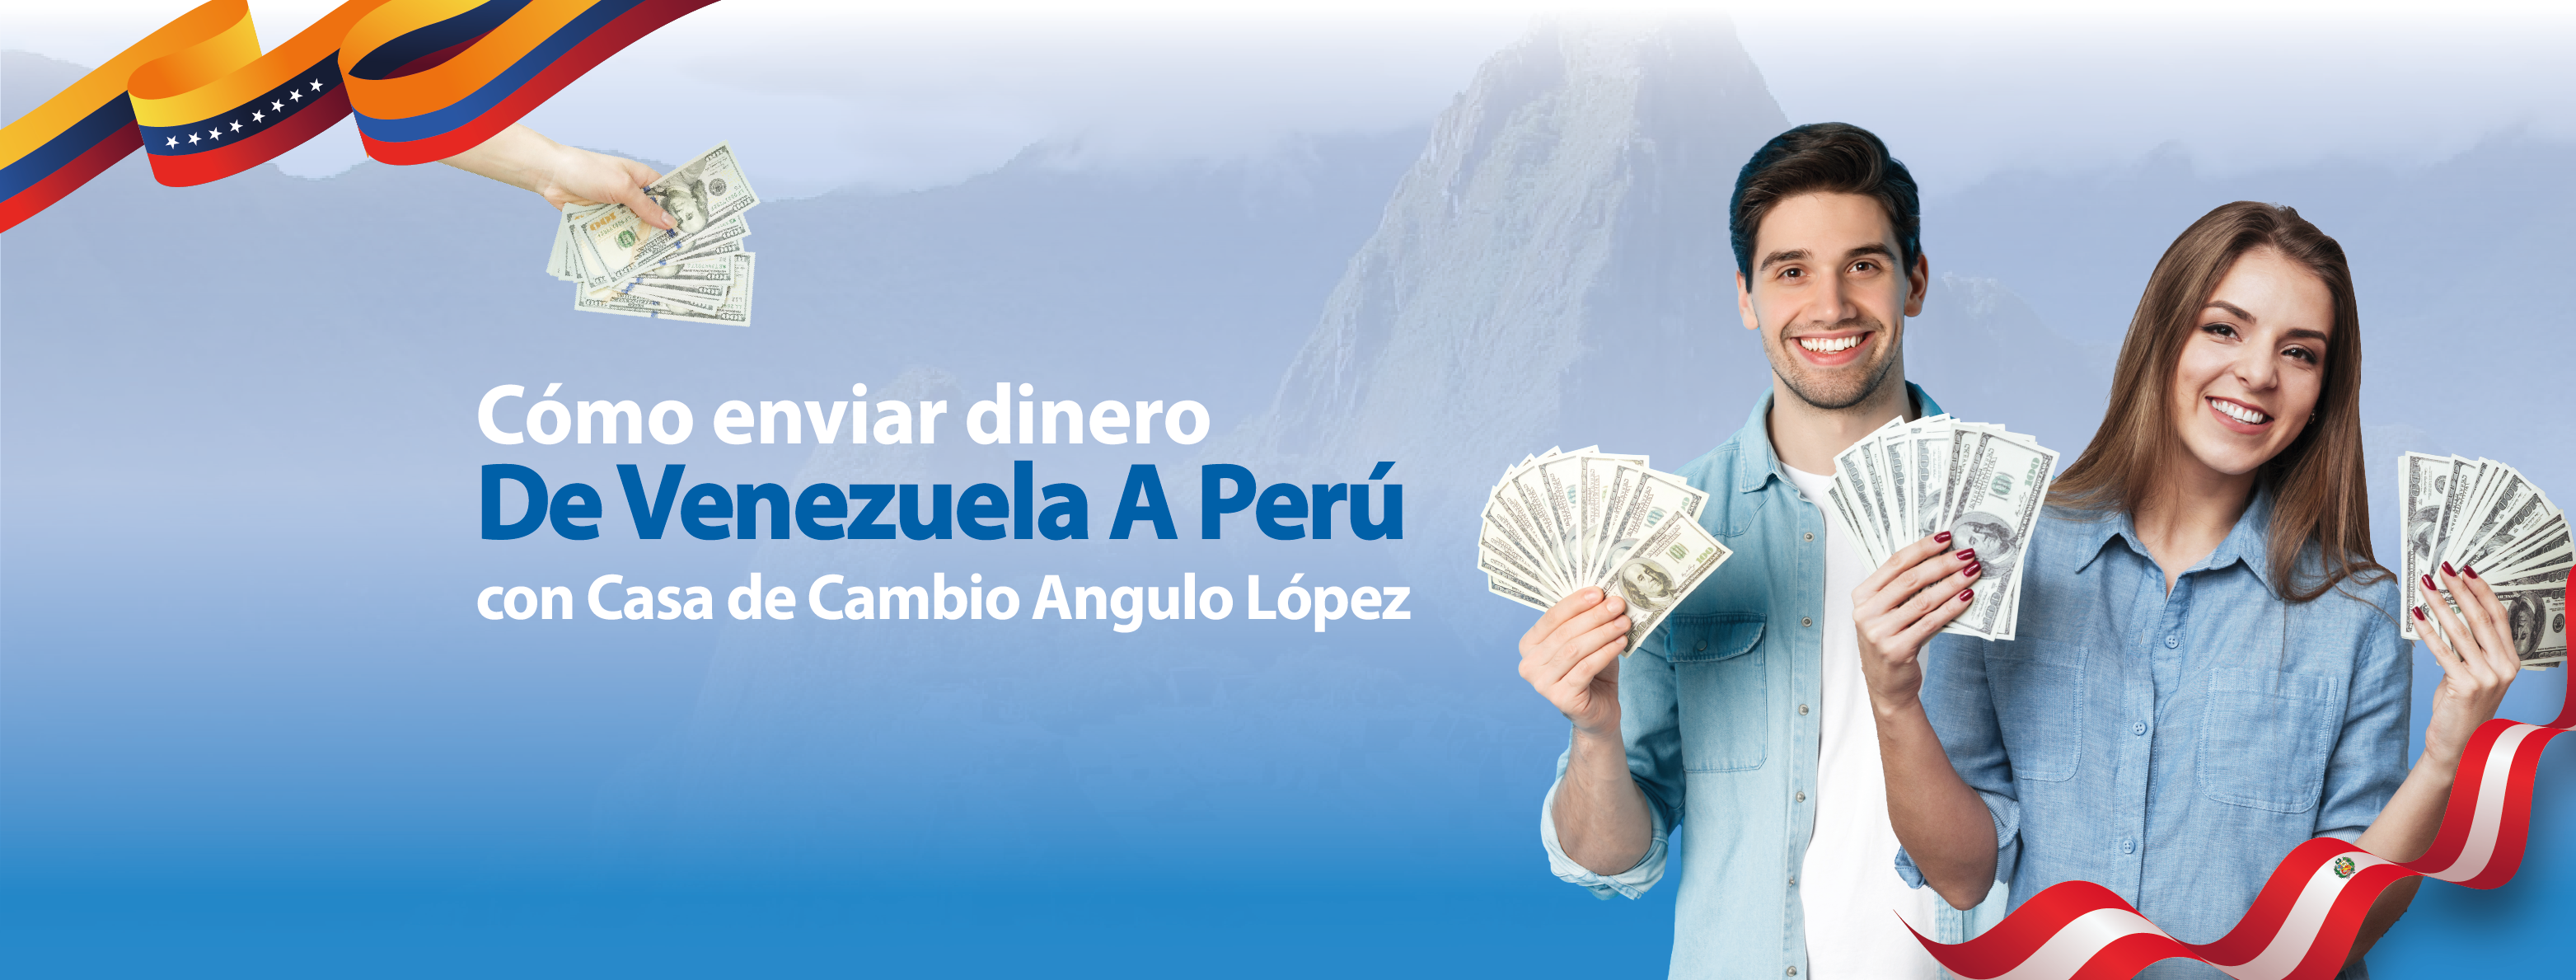 cómo-enviar-dinero-de-venezuela-a-peru.jpg.png